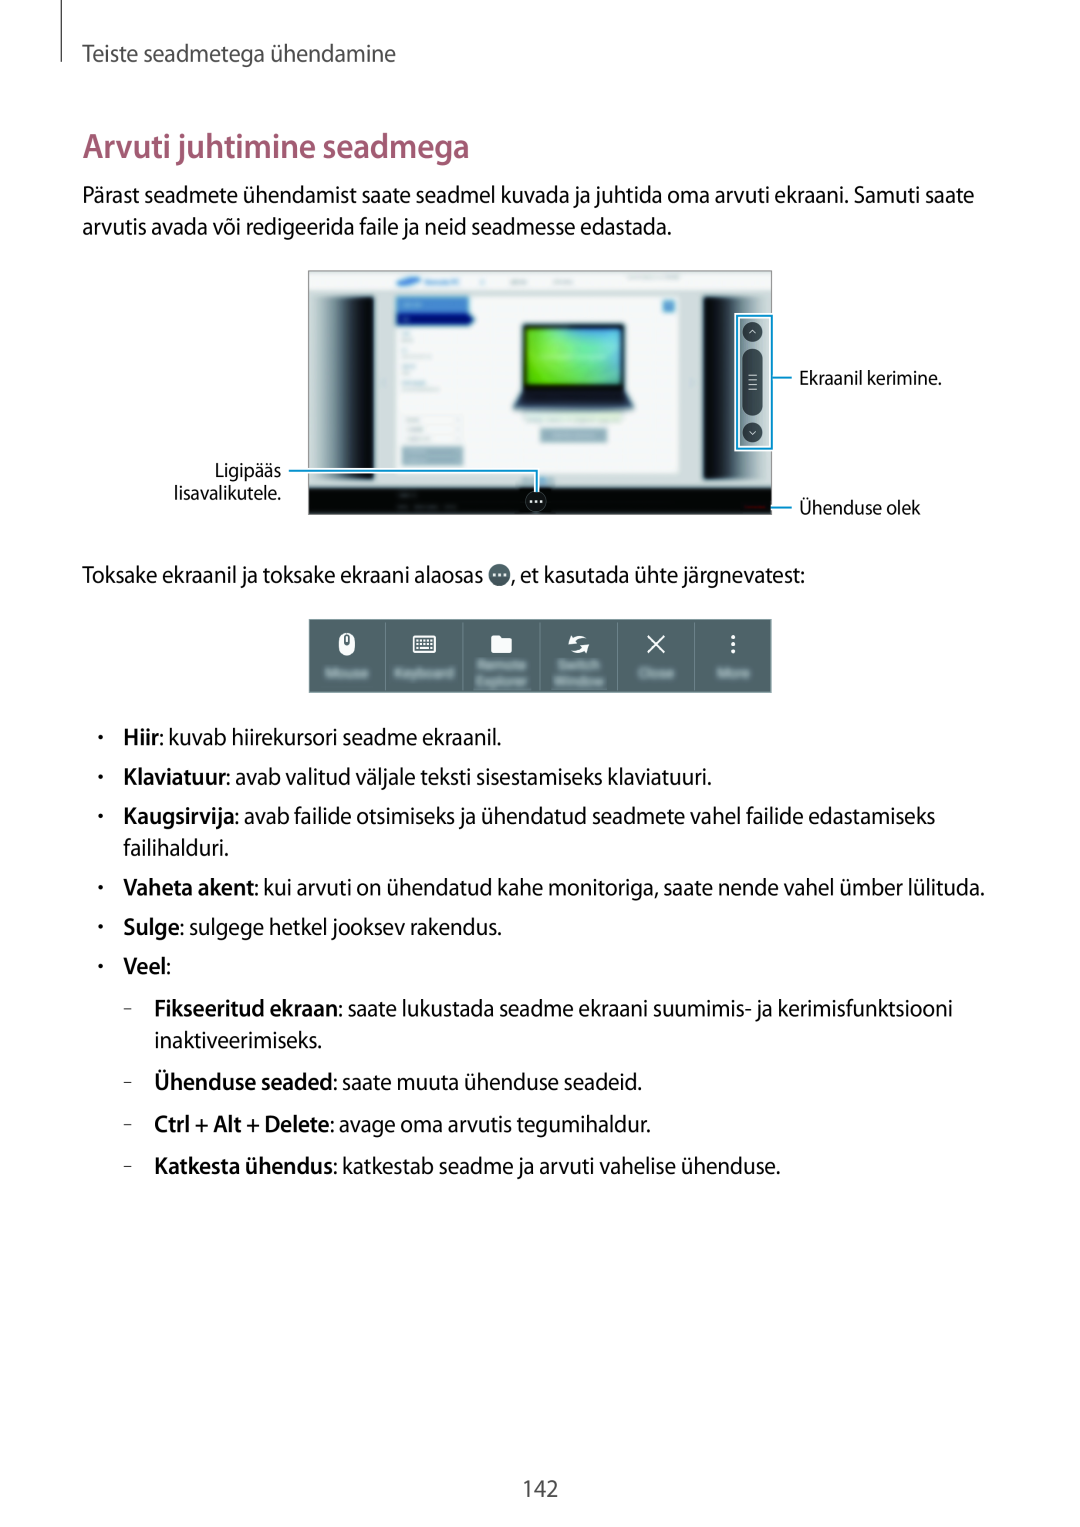 Samsung SM-T700NZWASEB, SM-T700NTSASEB manual Arvuti juhtimine seadmega, Veel, Teiste seadmetega ühendamine 